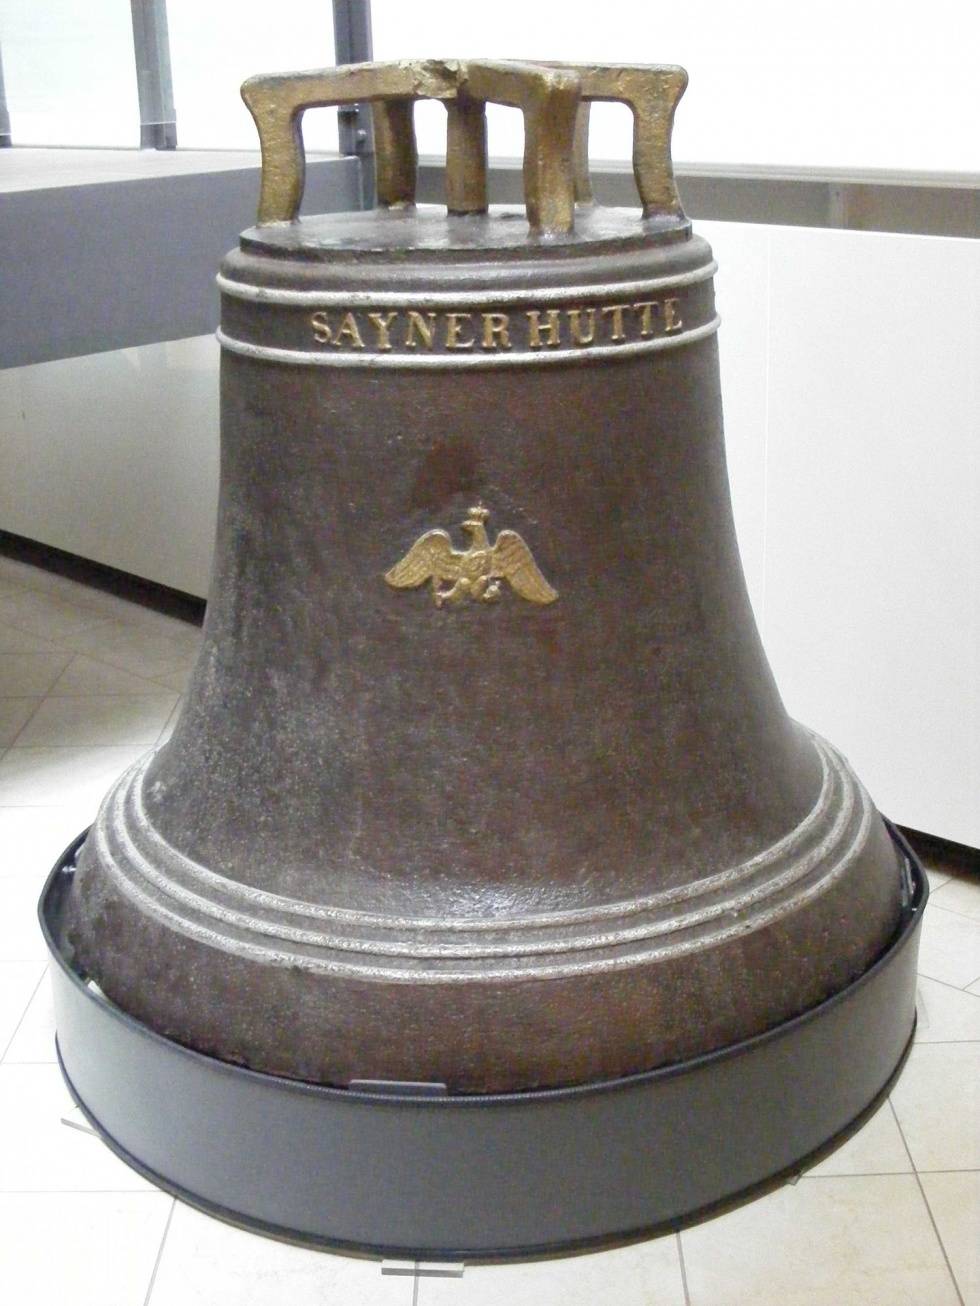 Gusseiserne Glocke mit preußischem Adler (Rheinisches Eisenkunstguss-Museum CC BY-NC-SA)